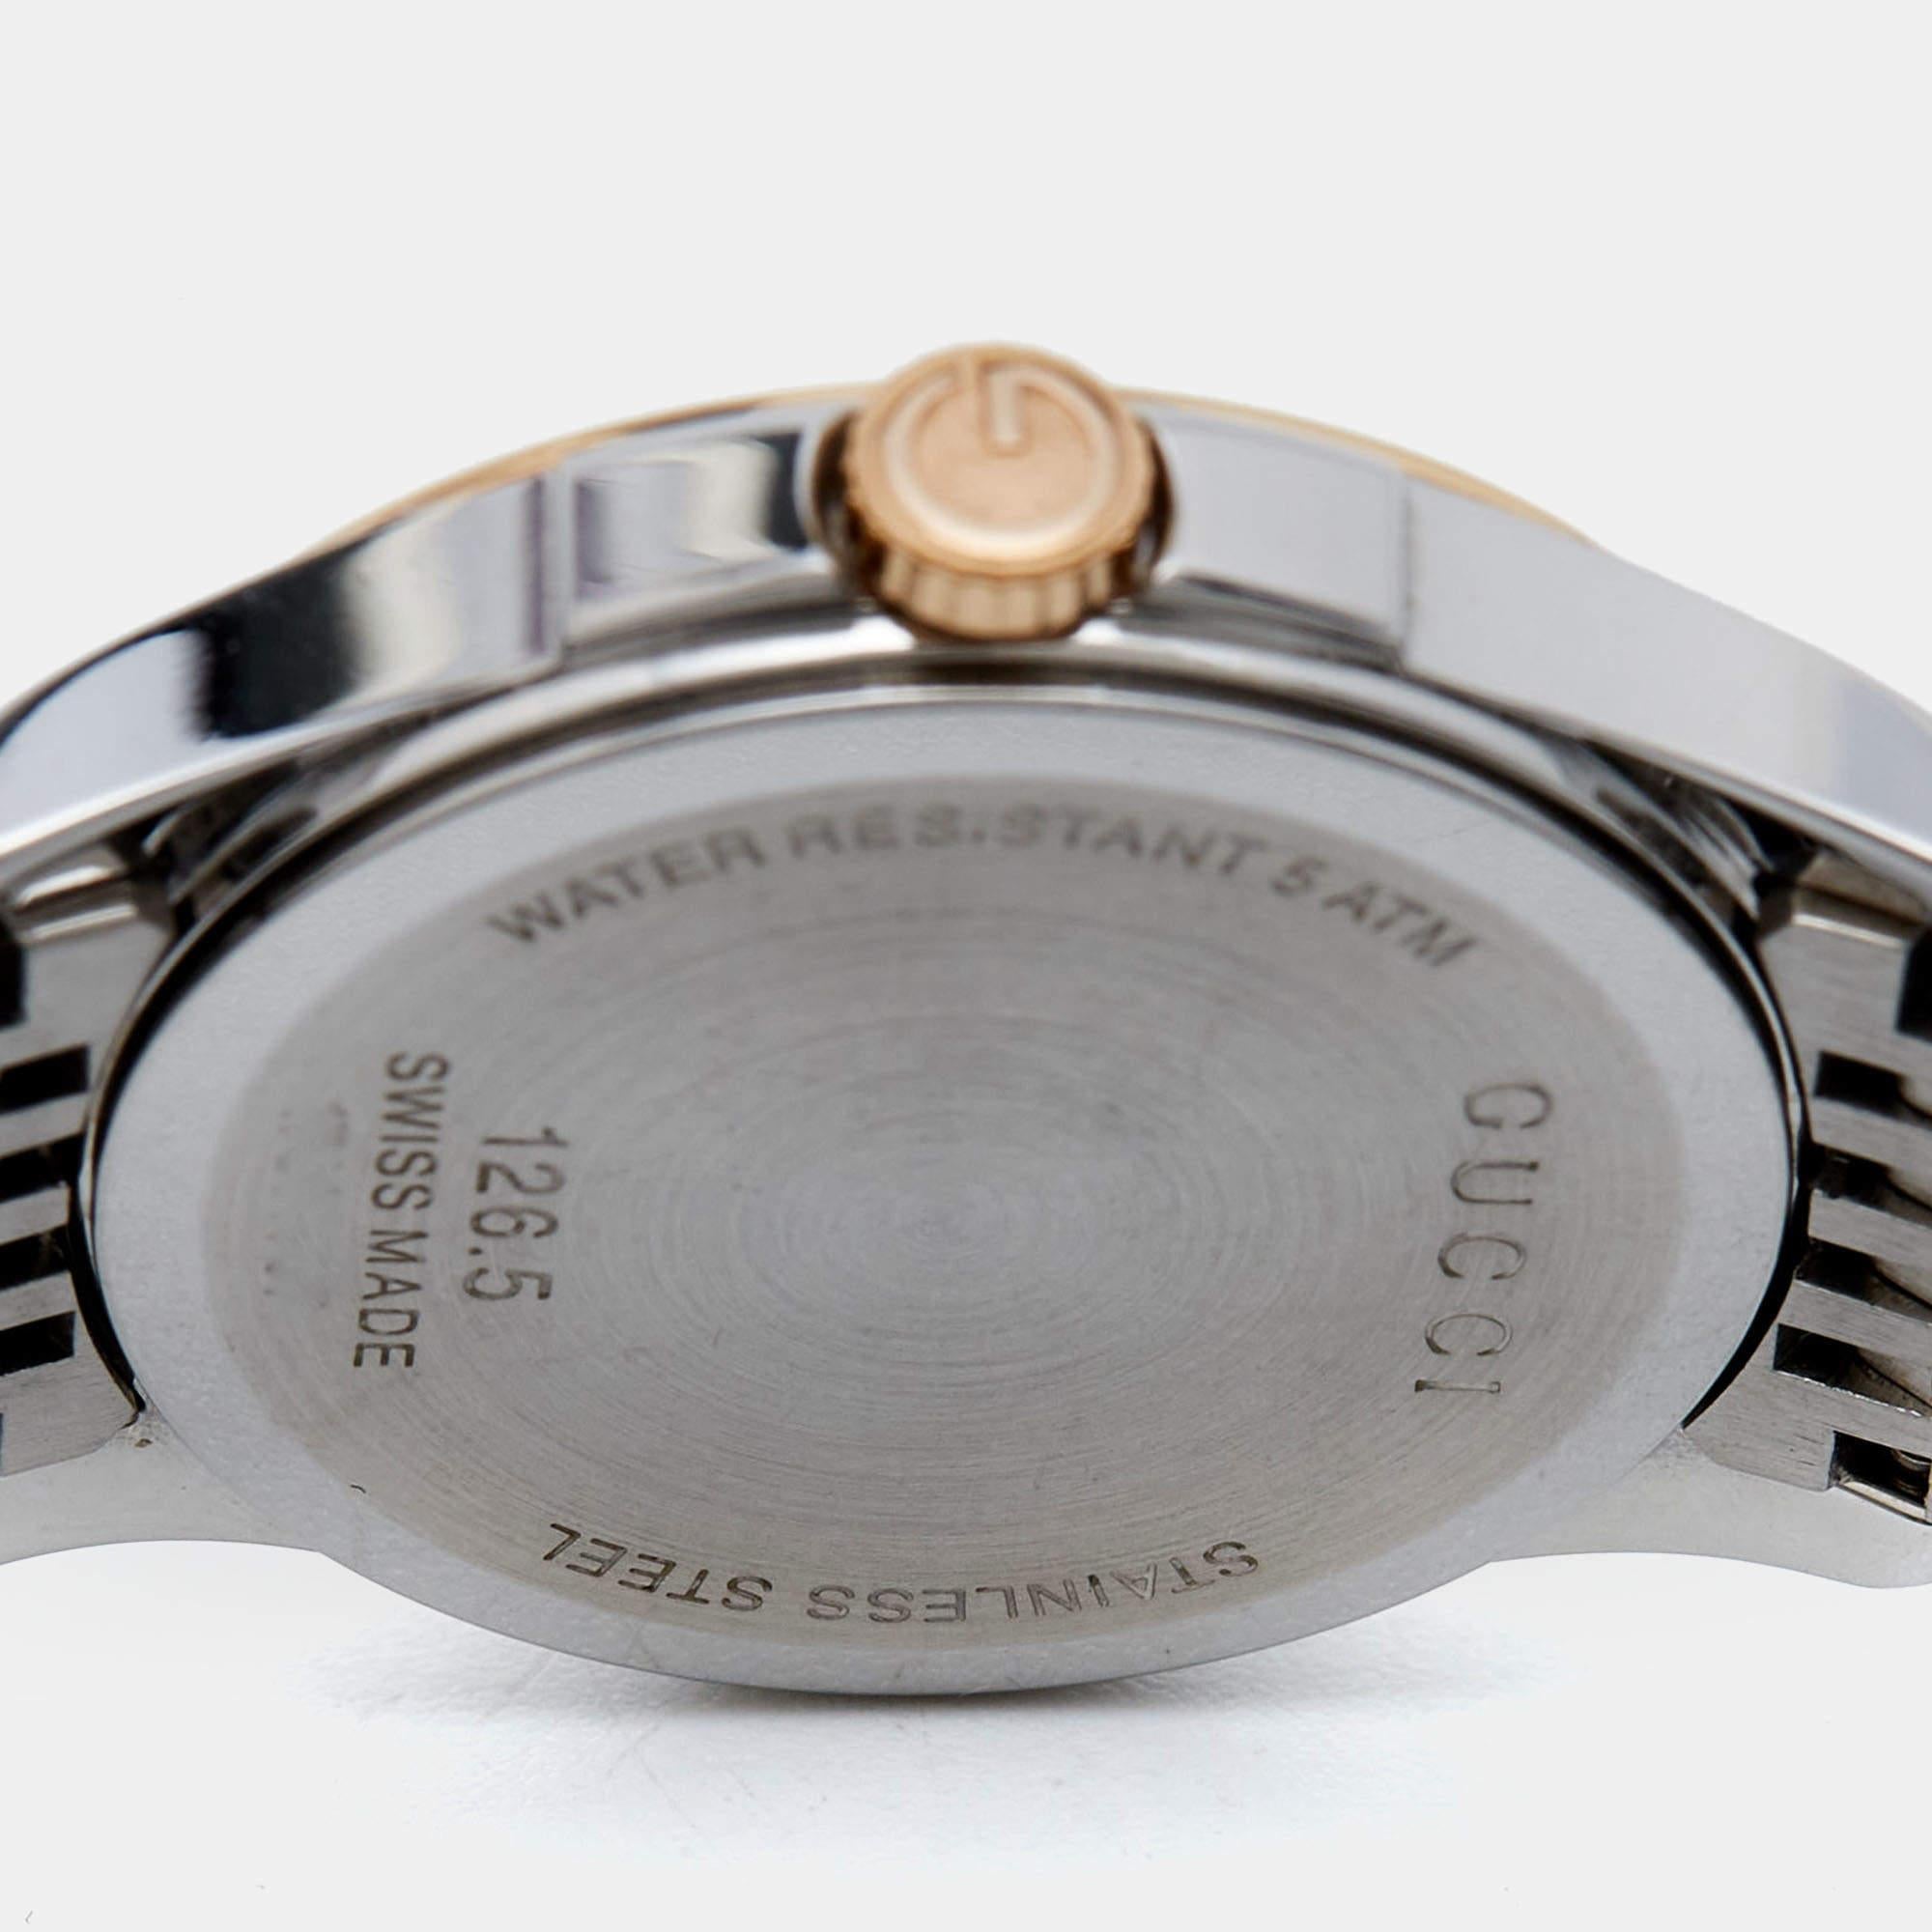 Une silhouette intemporelle faite de matériaux de haute qualité et remplie de précision et de luxe fait de cette montre-bracelet le choix parfait pour une finition sophistiquée de n'importe quel look. Il s'agit d'une création grandiose destinée à